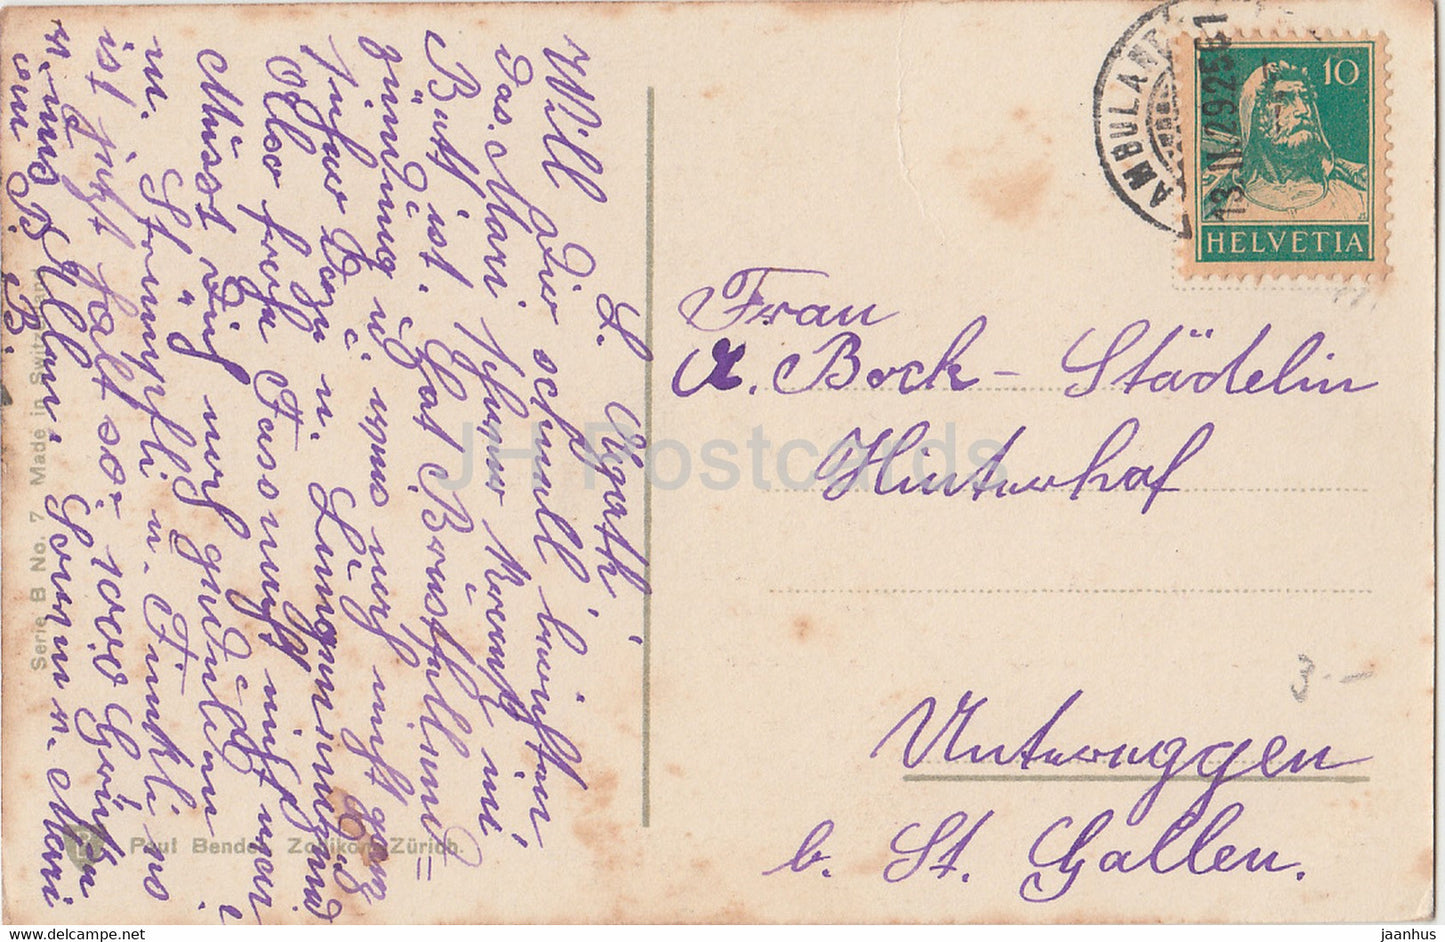 rote Rosen - Blumen - Paul Bender - Nr. 7 - alte Postkarte - 1929 - Schweiz - gebraucht